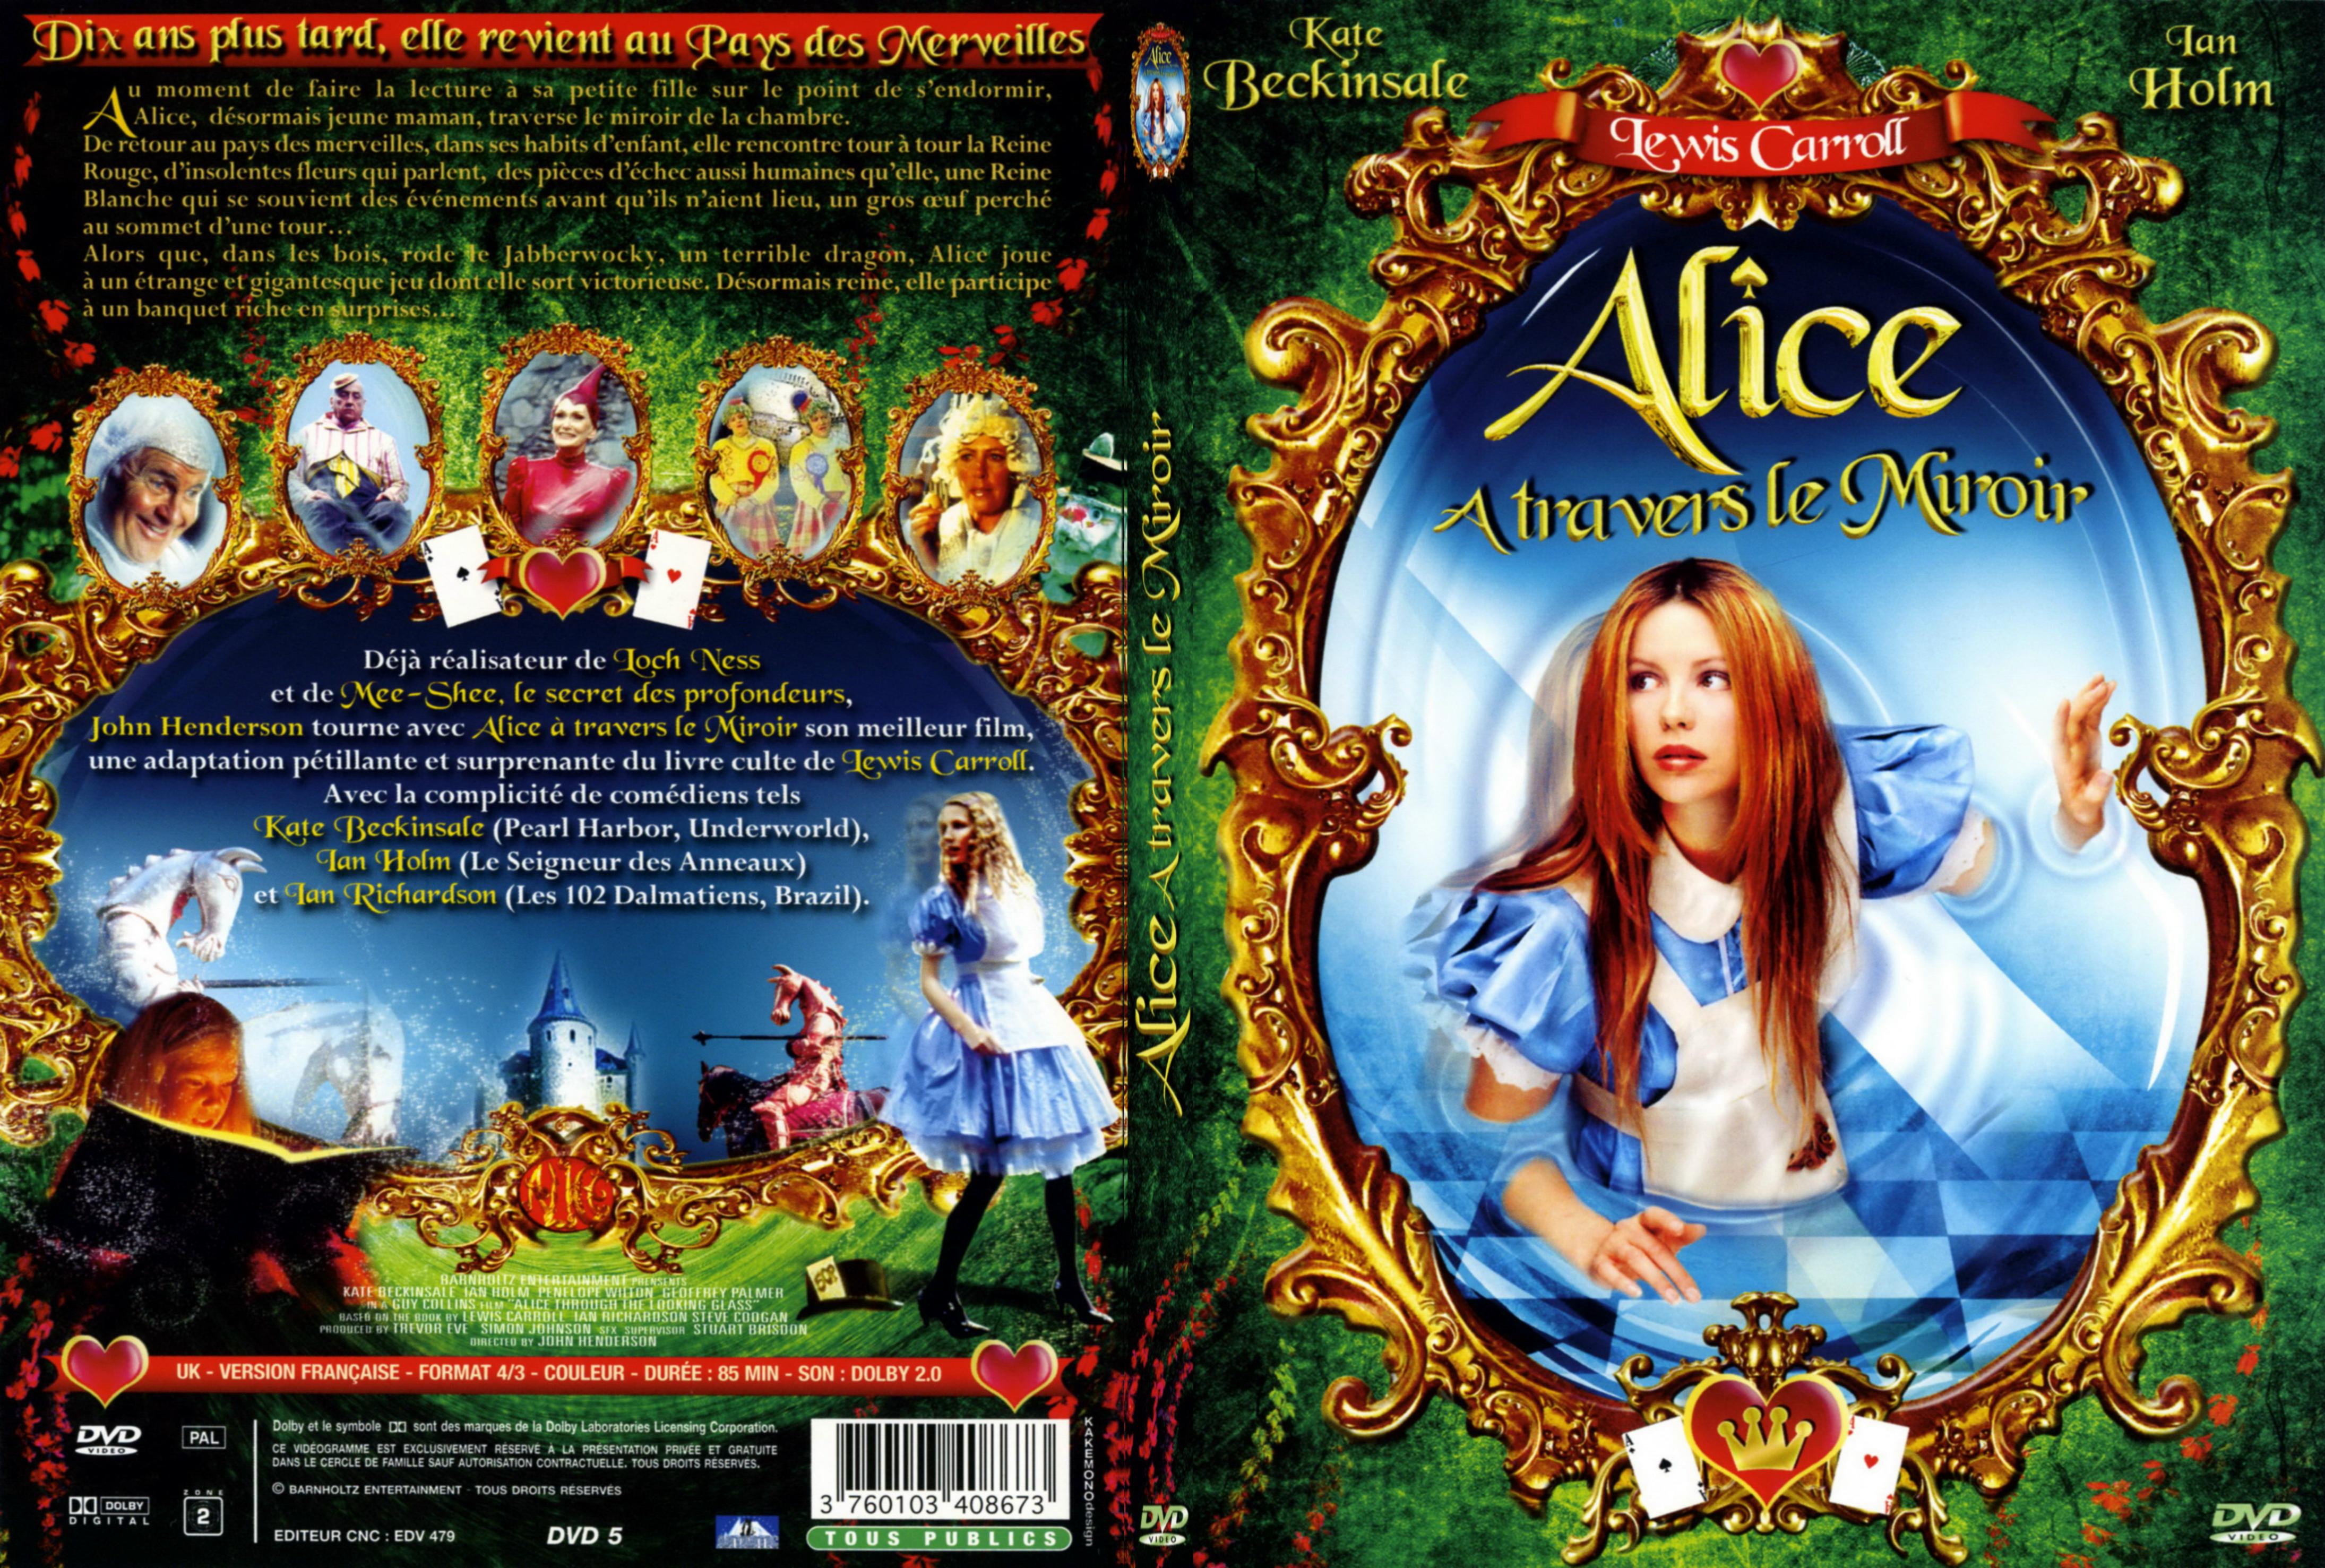 Jaquette DVD Alice a travers le miroir - SLIM